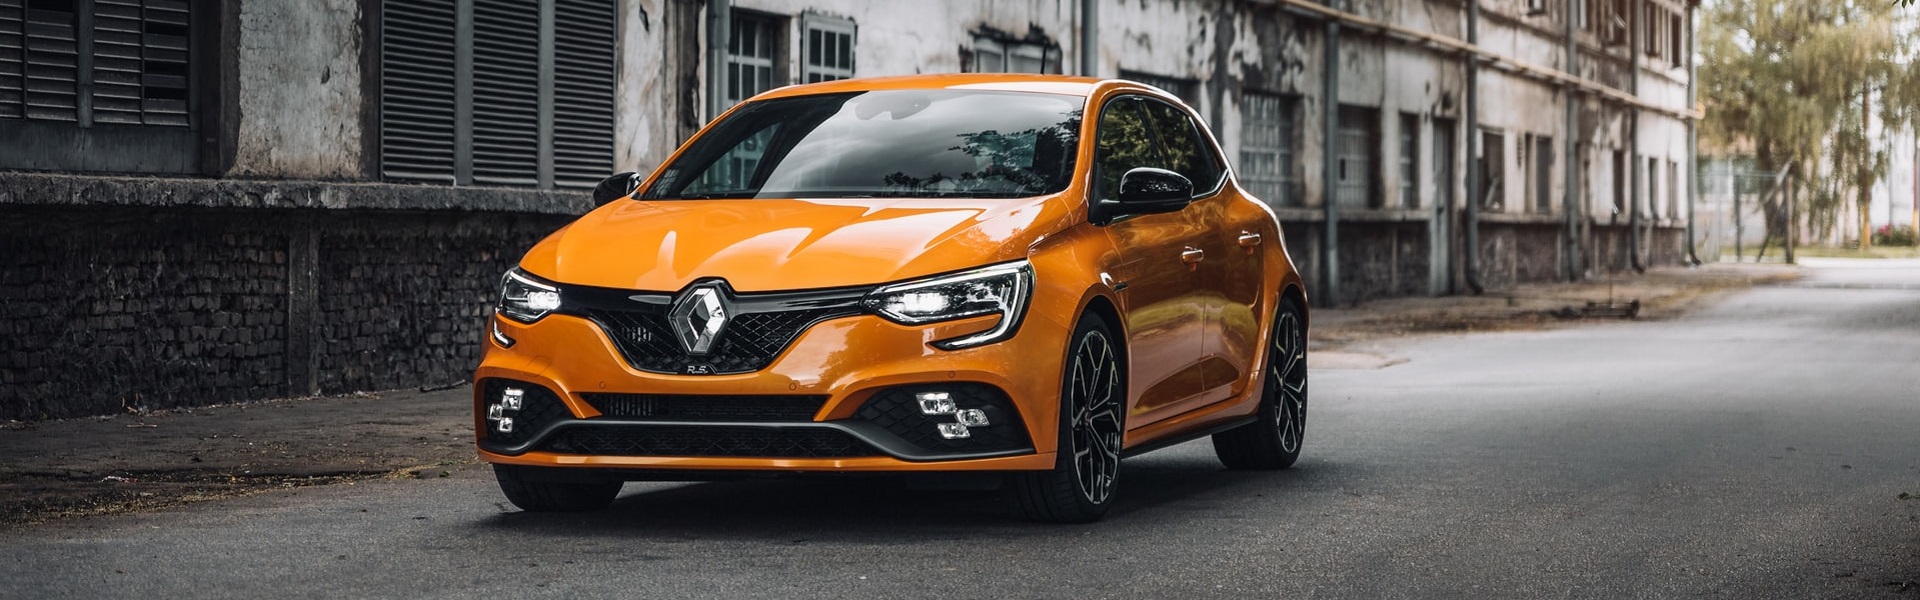 Registracija vozila | Renault delovi